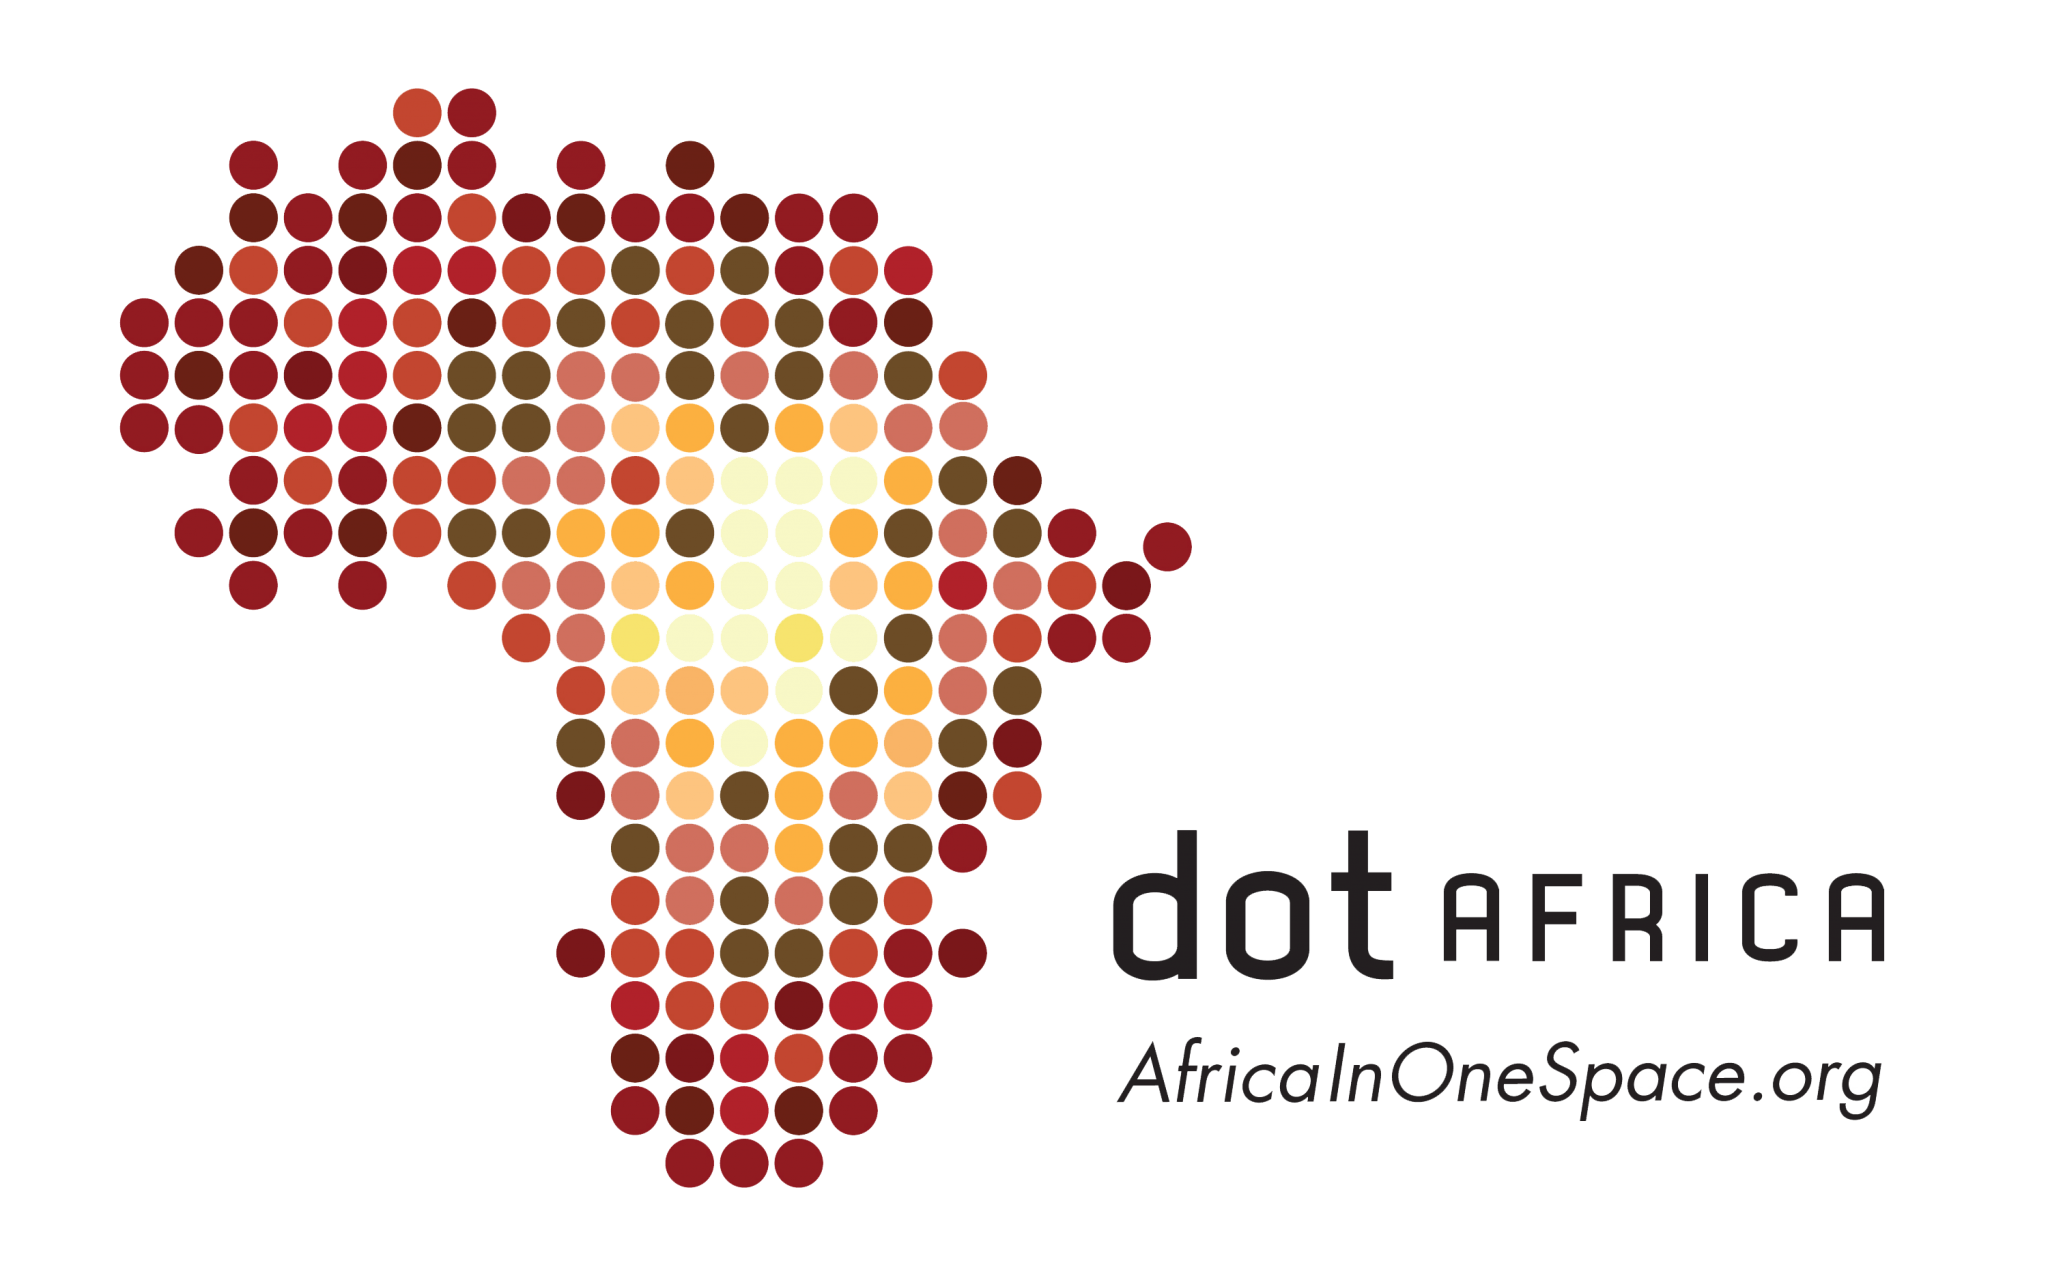 dotAfrica-1gg